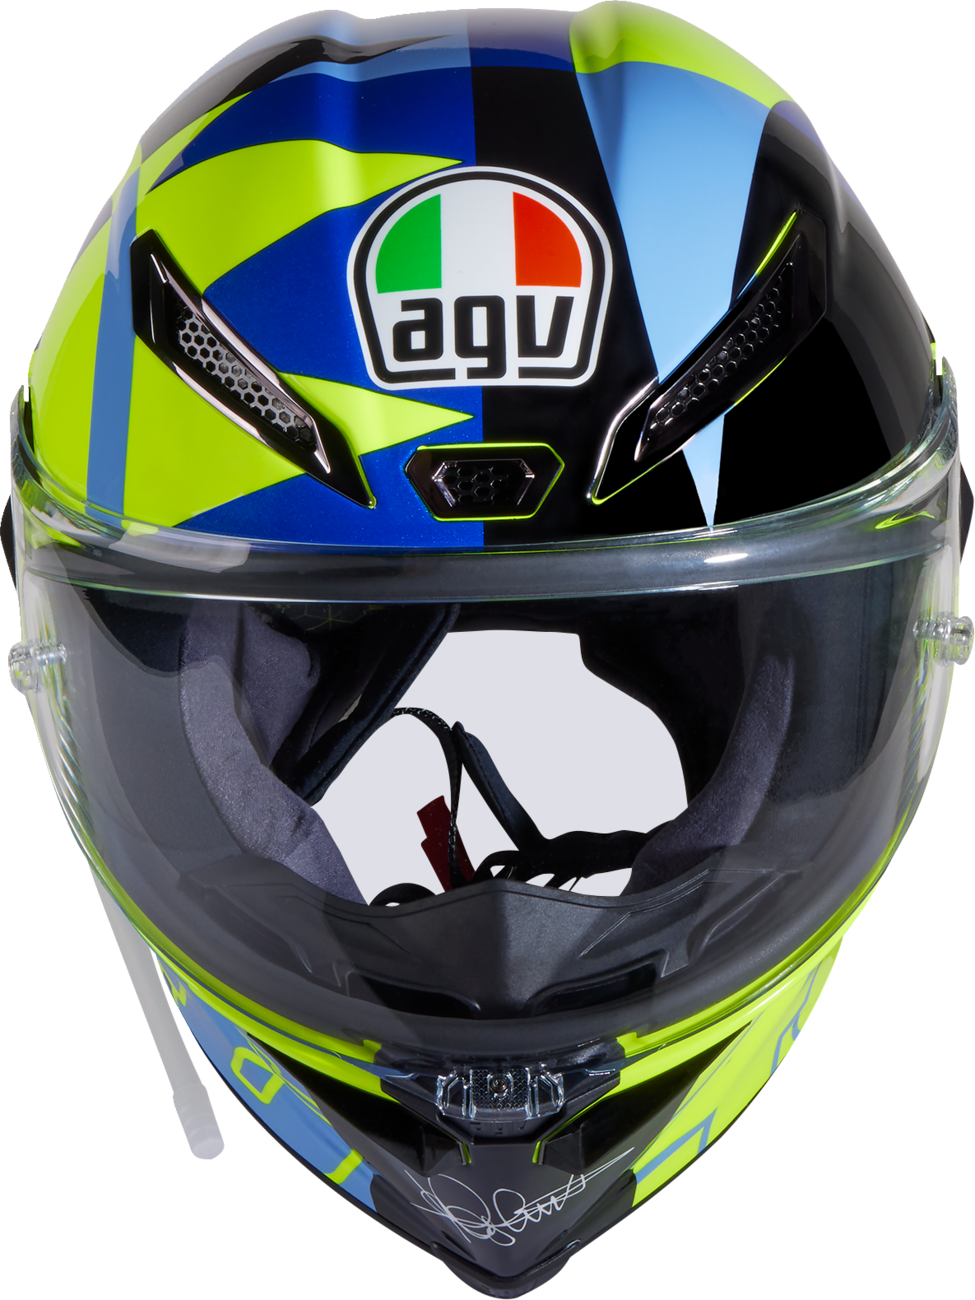 AGV Pista GP RR Soleluna 2022 Helmet